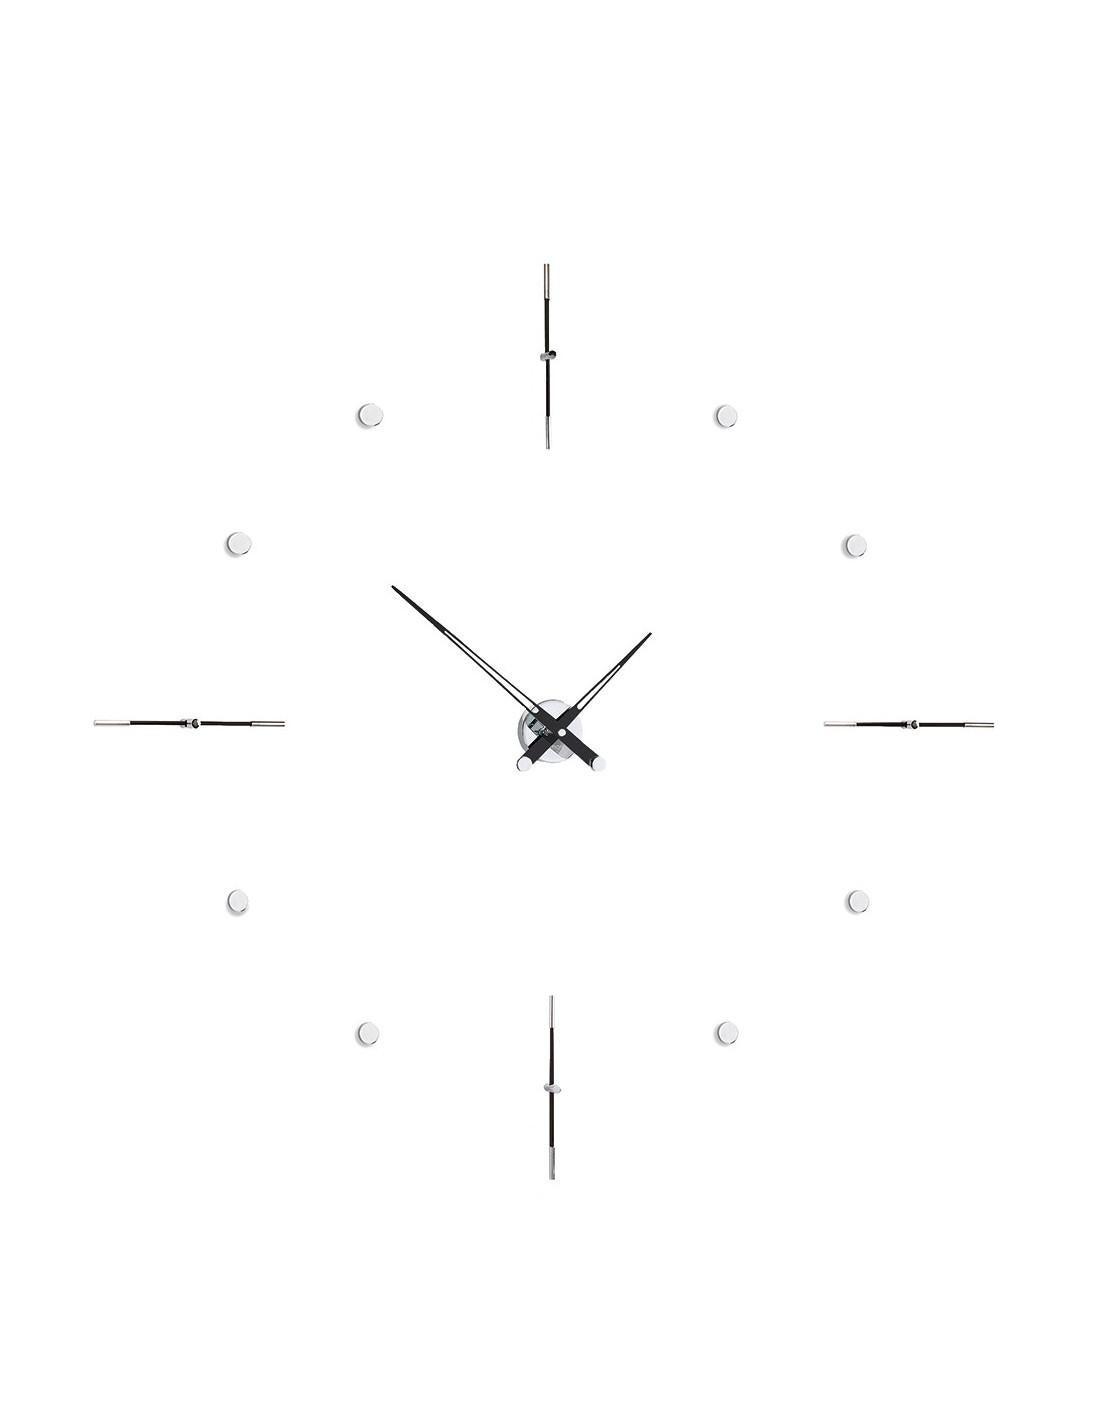 Eine Uhr ist nicht nur ein dekoratives Element, sondern auch ein sehr funktionales Element. Sie zeigt uns den Lauf der Zeit an und hilft uns dabei, den Verpflichtungen nachzukommen, die wir sowohl im beruflichen als auch im privaten Umfeld